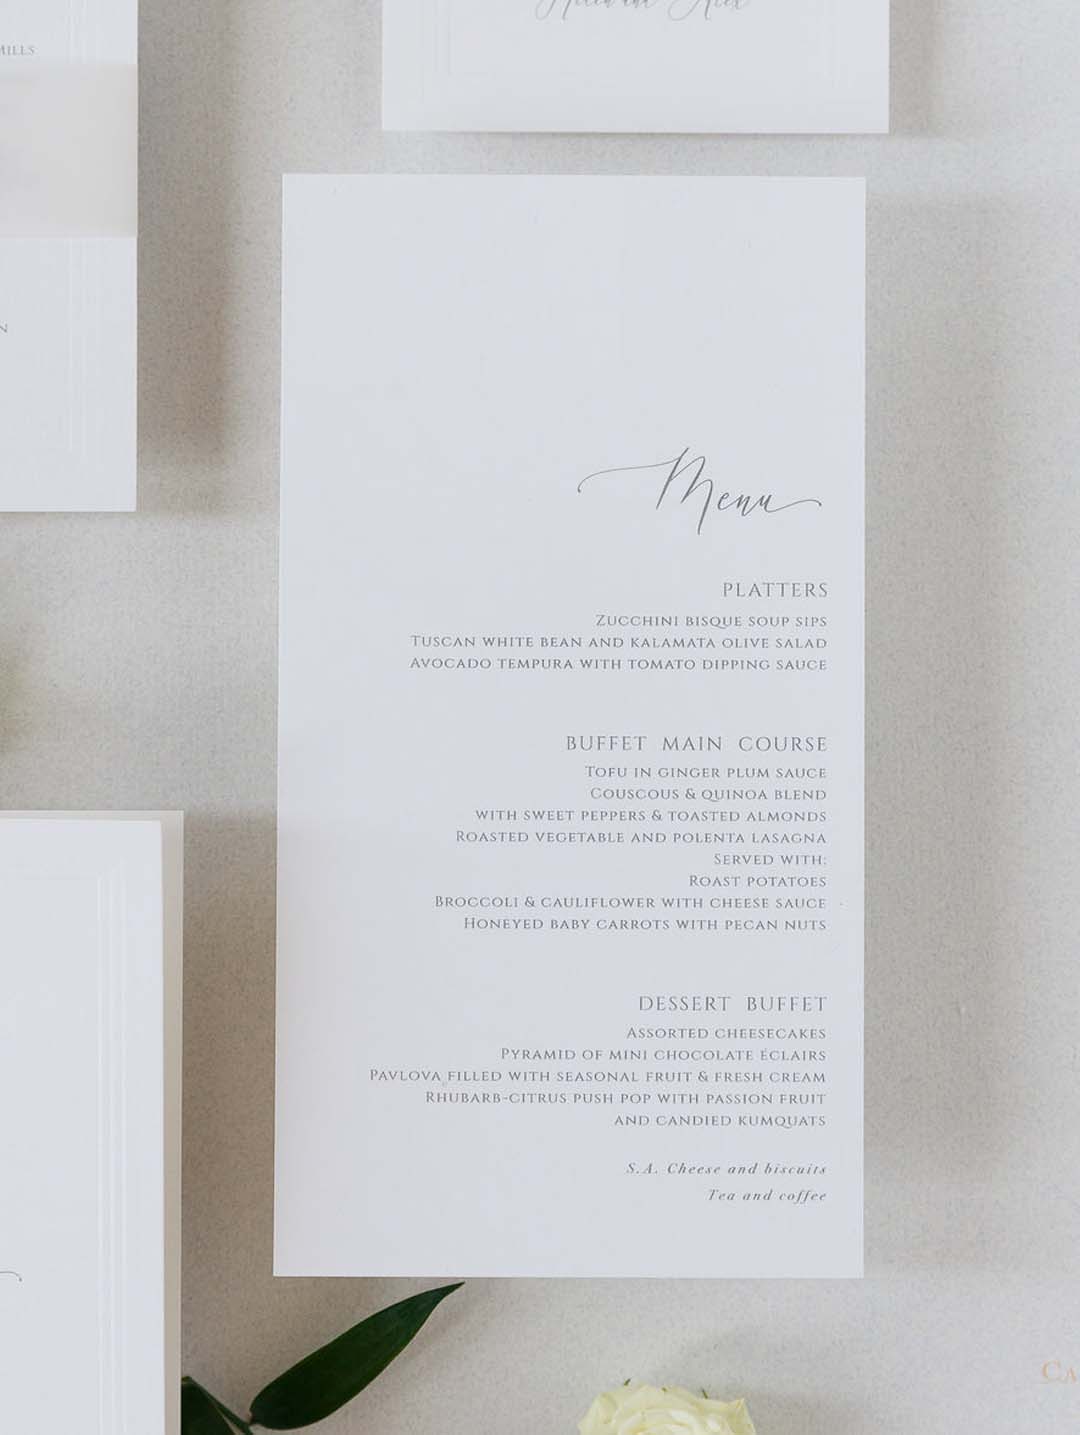 Tarjetas de menú de boda clásicas con nombres de invitados y sello de cera